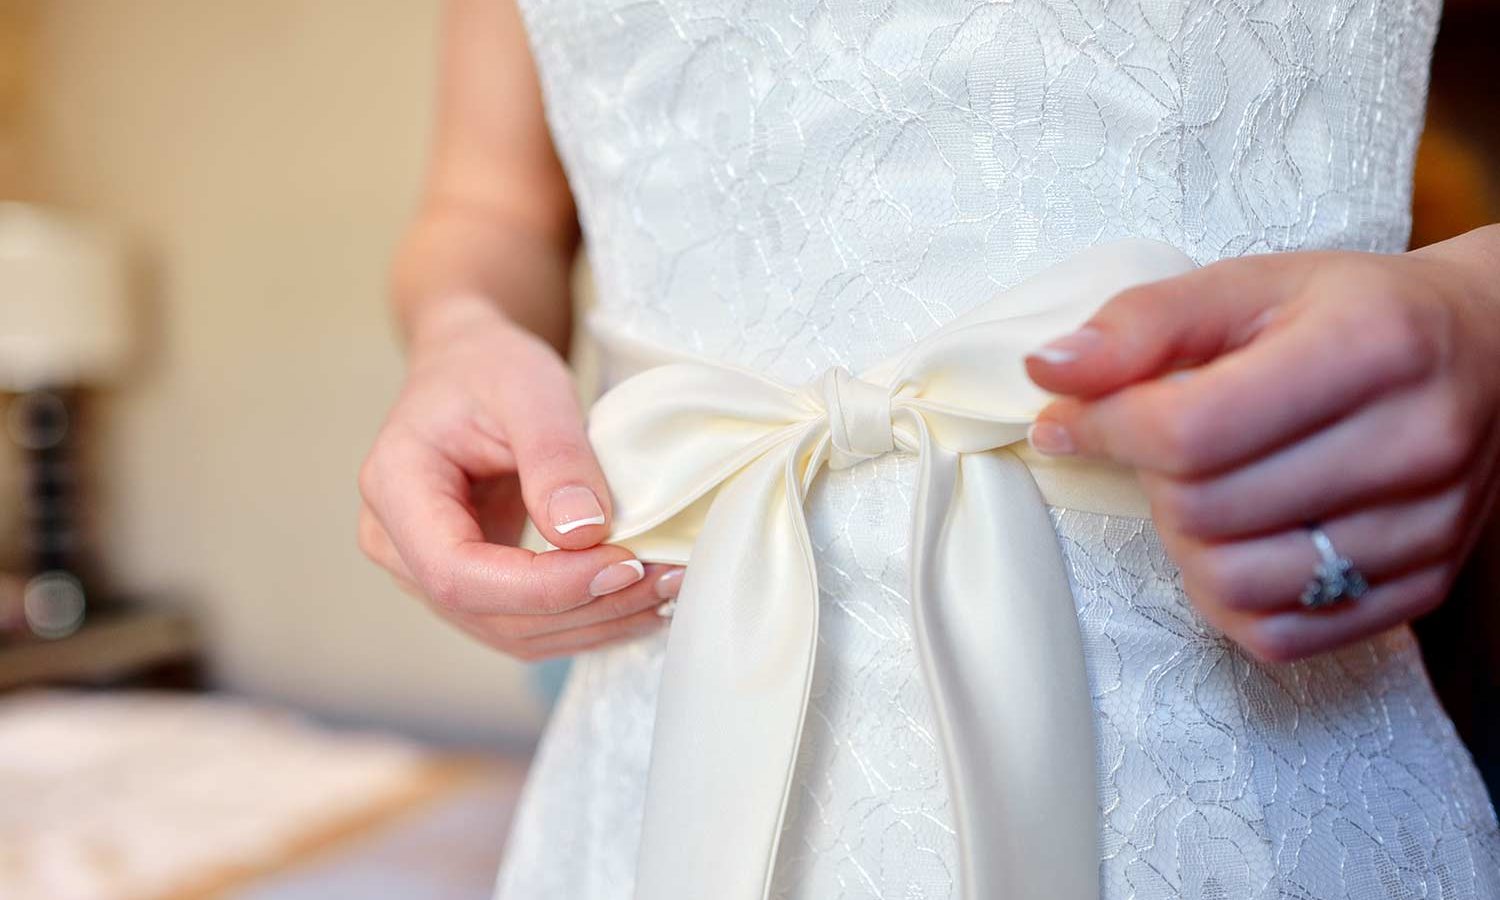 Brautkleid mit Schleife